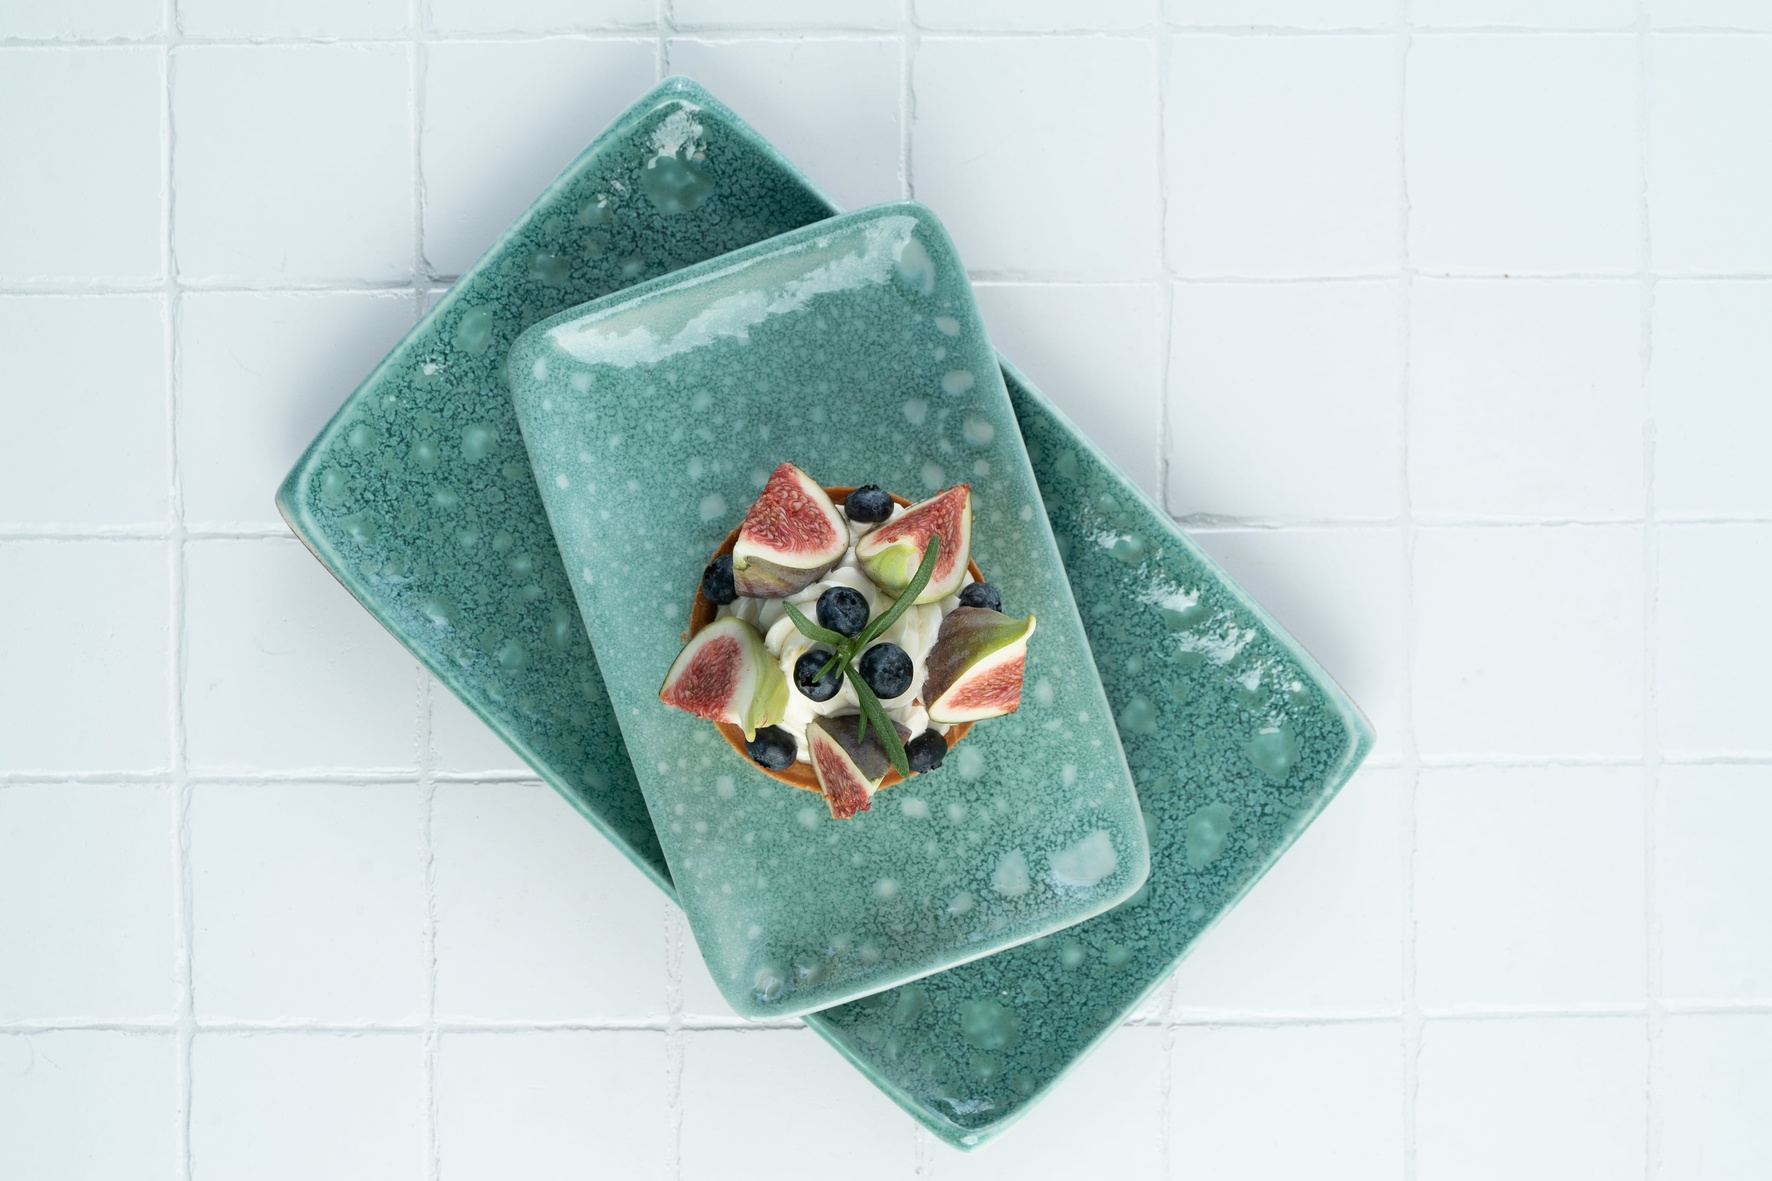 Manna ceramics: створює посуд для ресторанів та просто поціновувачів якісної та естетичної кераміки